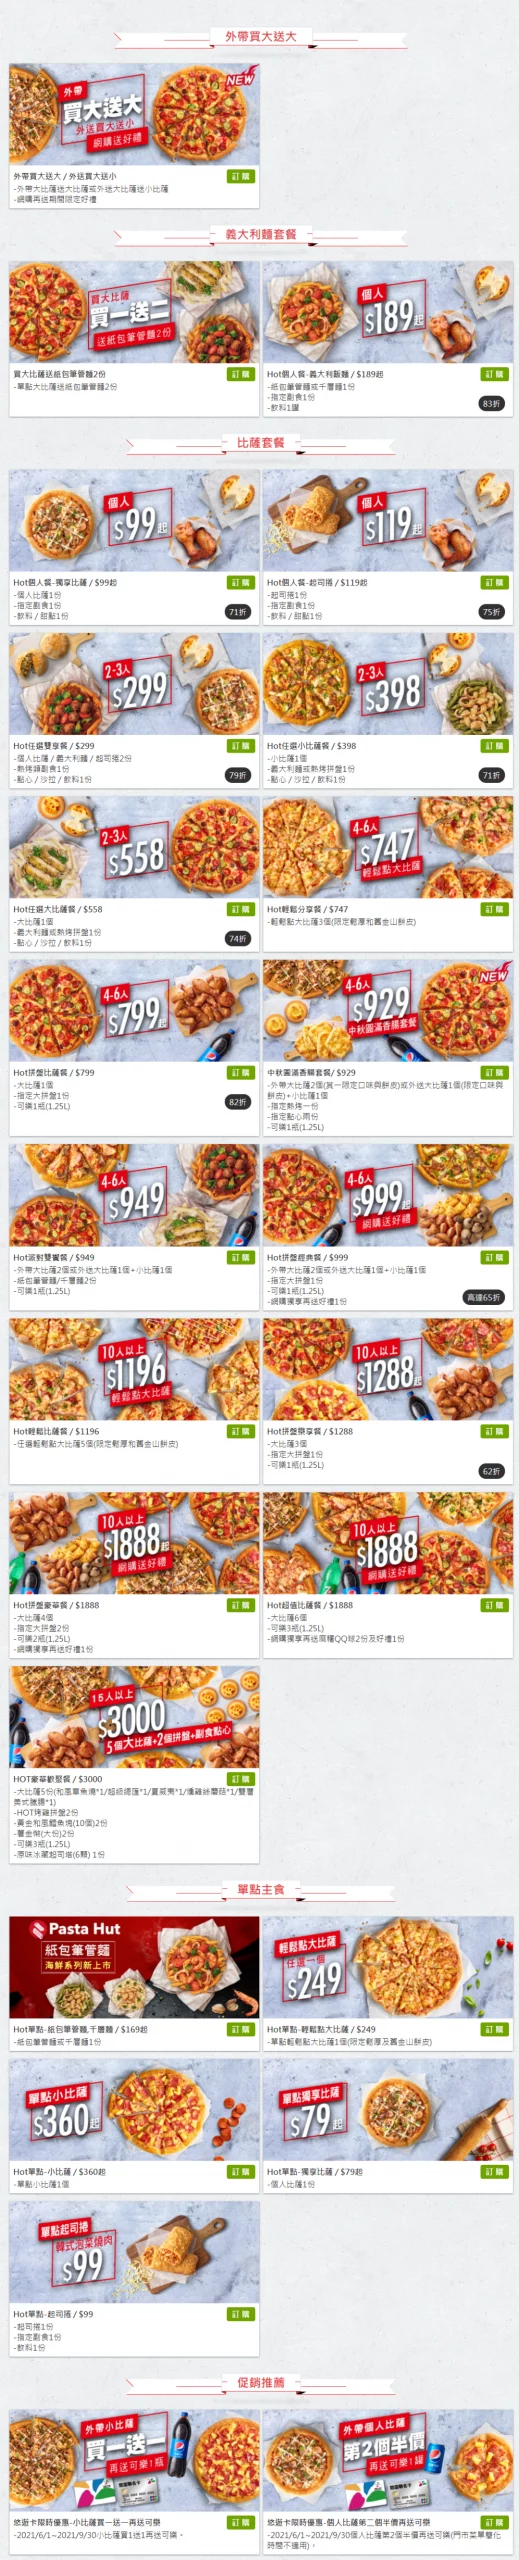 pizzahut必勝客優惠推薦菜單價目表